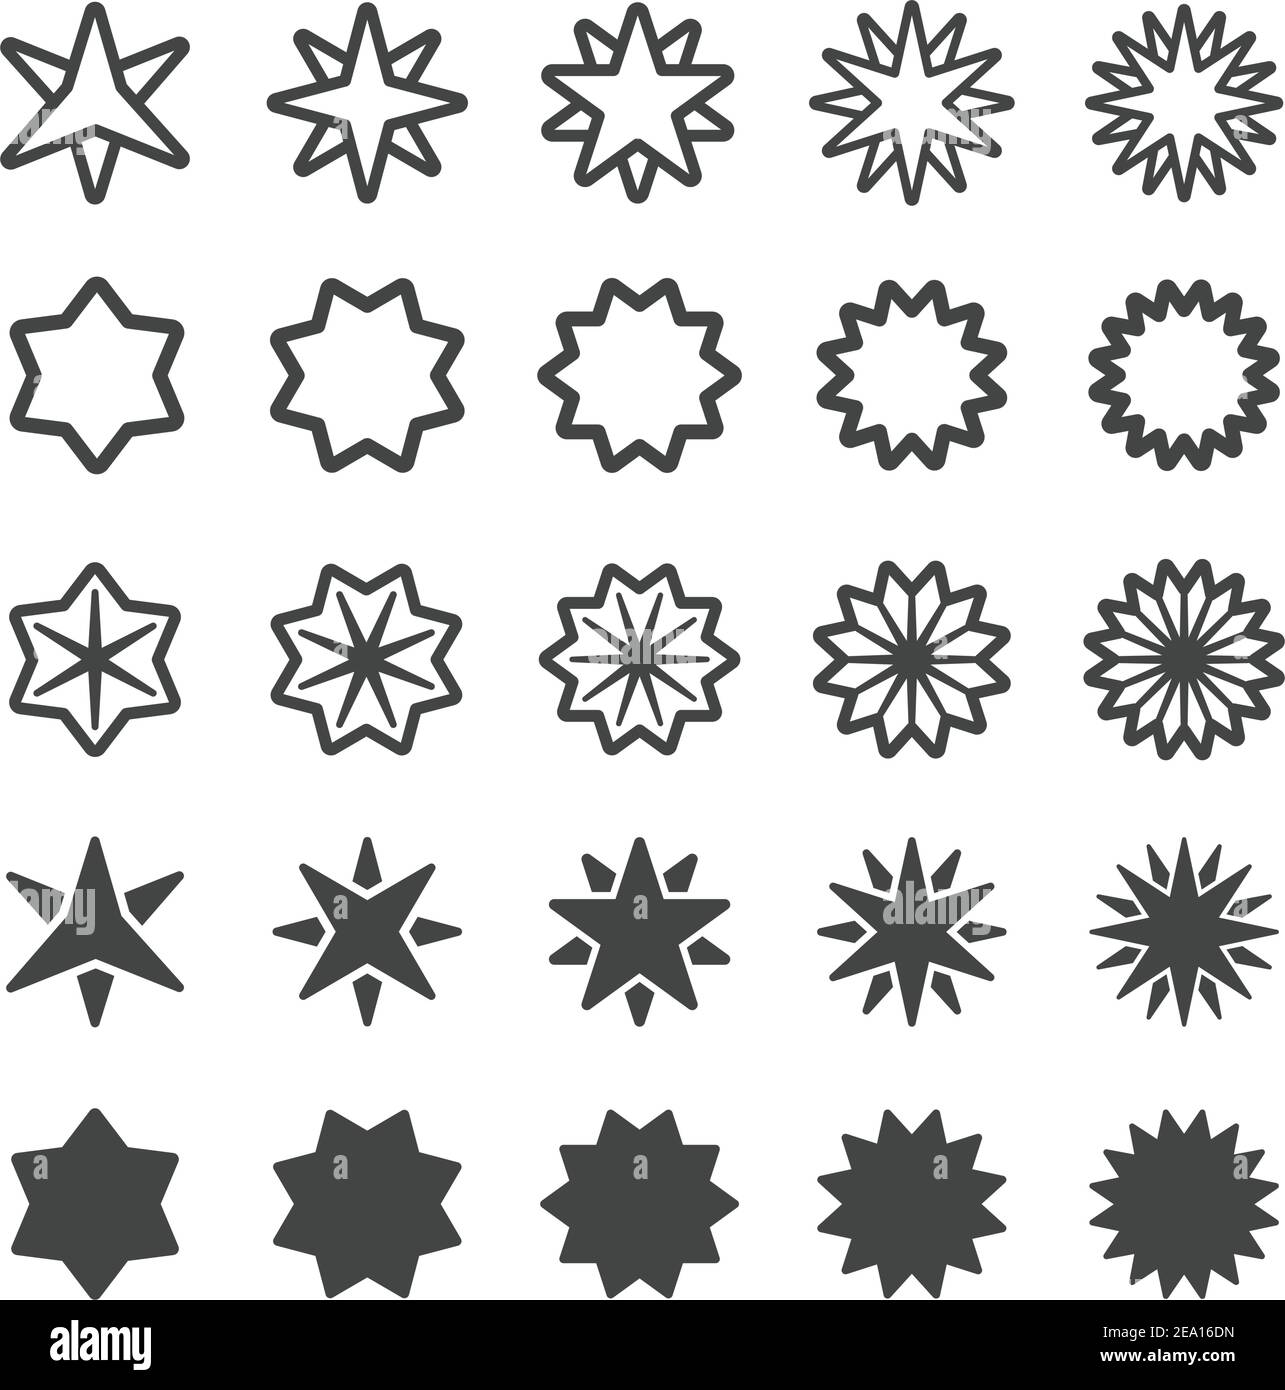 juego de iconos de estrella multipuntiaguda Ilustración del Vector